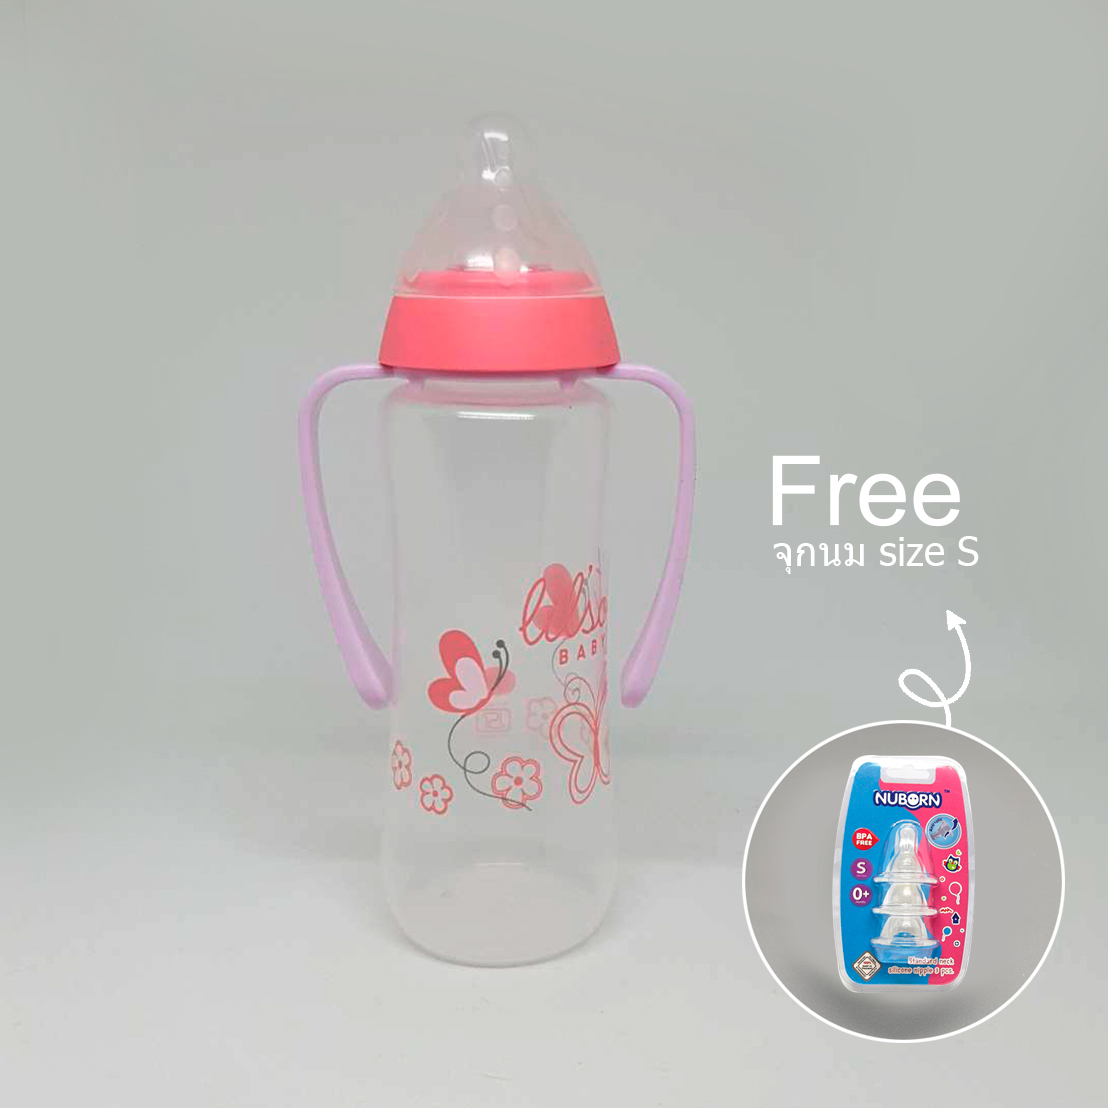 NUBORN แก้วหัดดื่ม ถ้วยหัดดื่ม ขวดน้ำสำหรับเด็ก  lilsoft baby 250 ml (8oz) แถมฟรีจุกนมเบอร์S